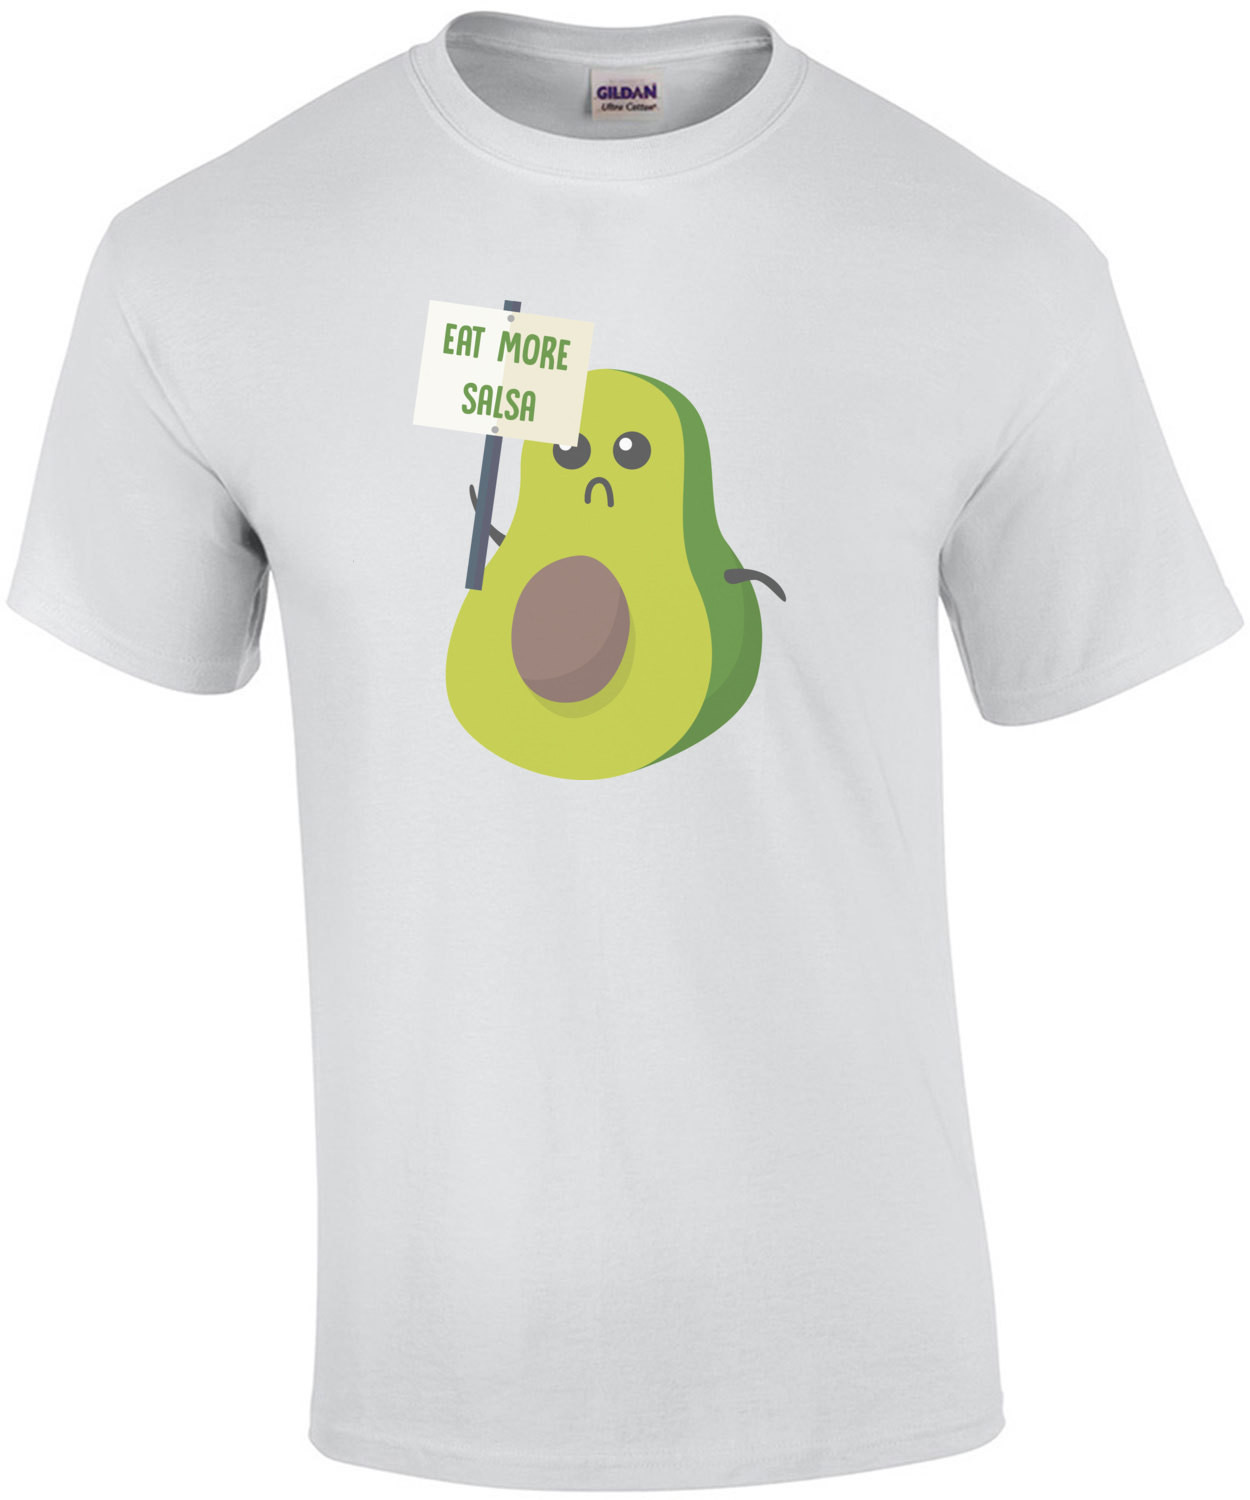 Eat more salsa - avocado t-shirt